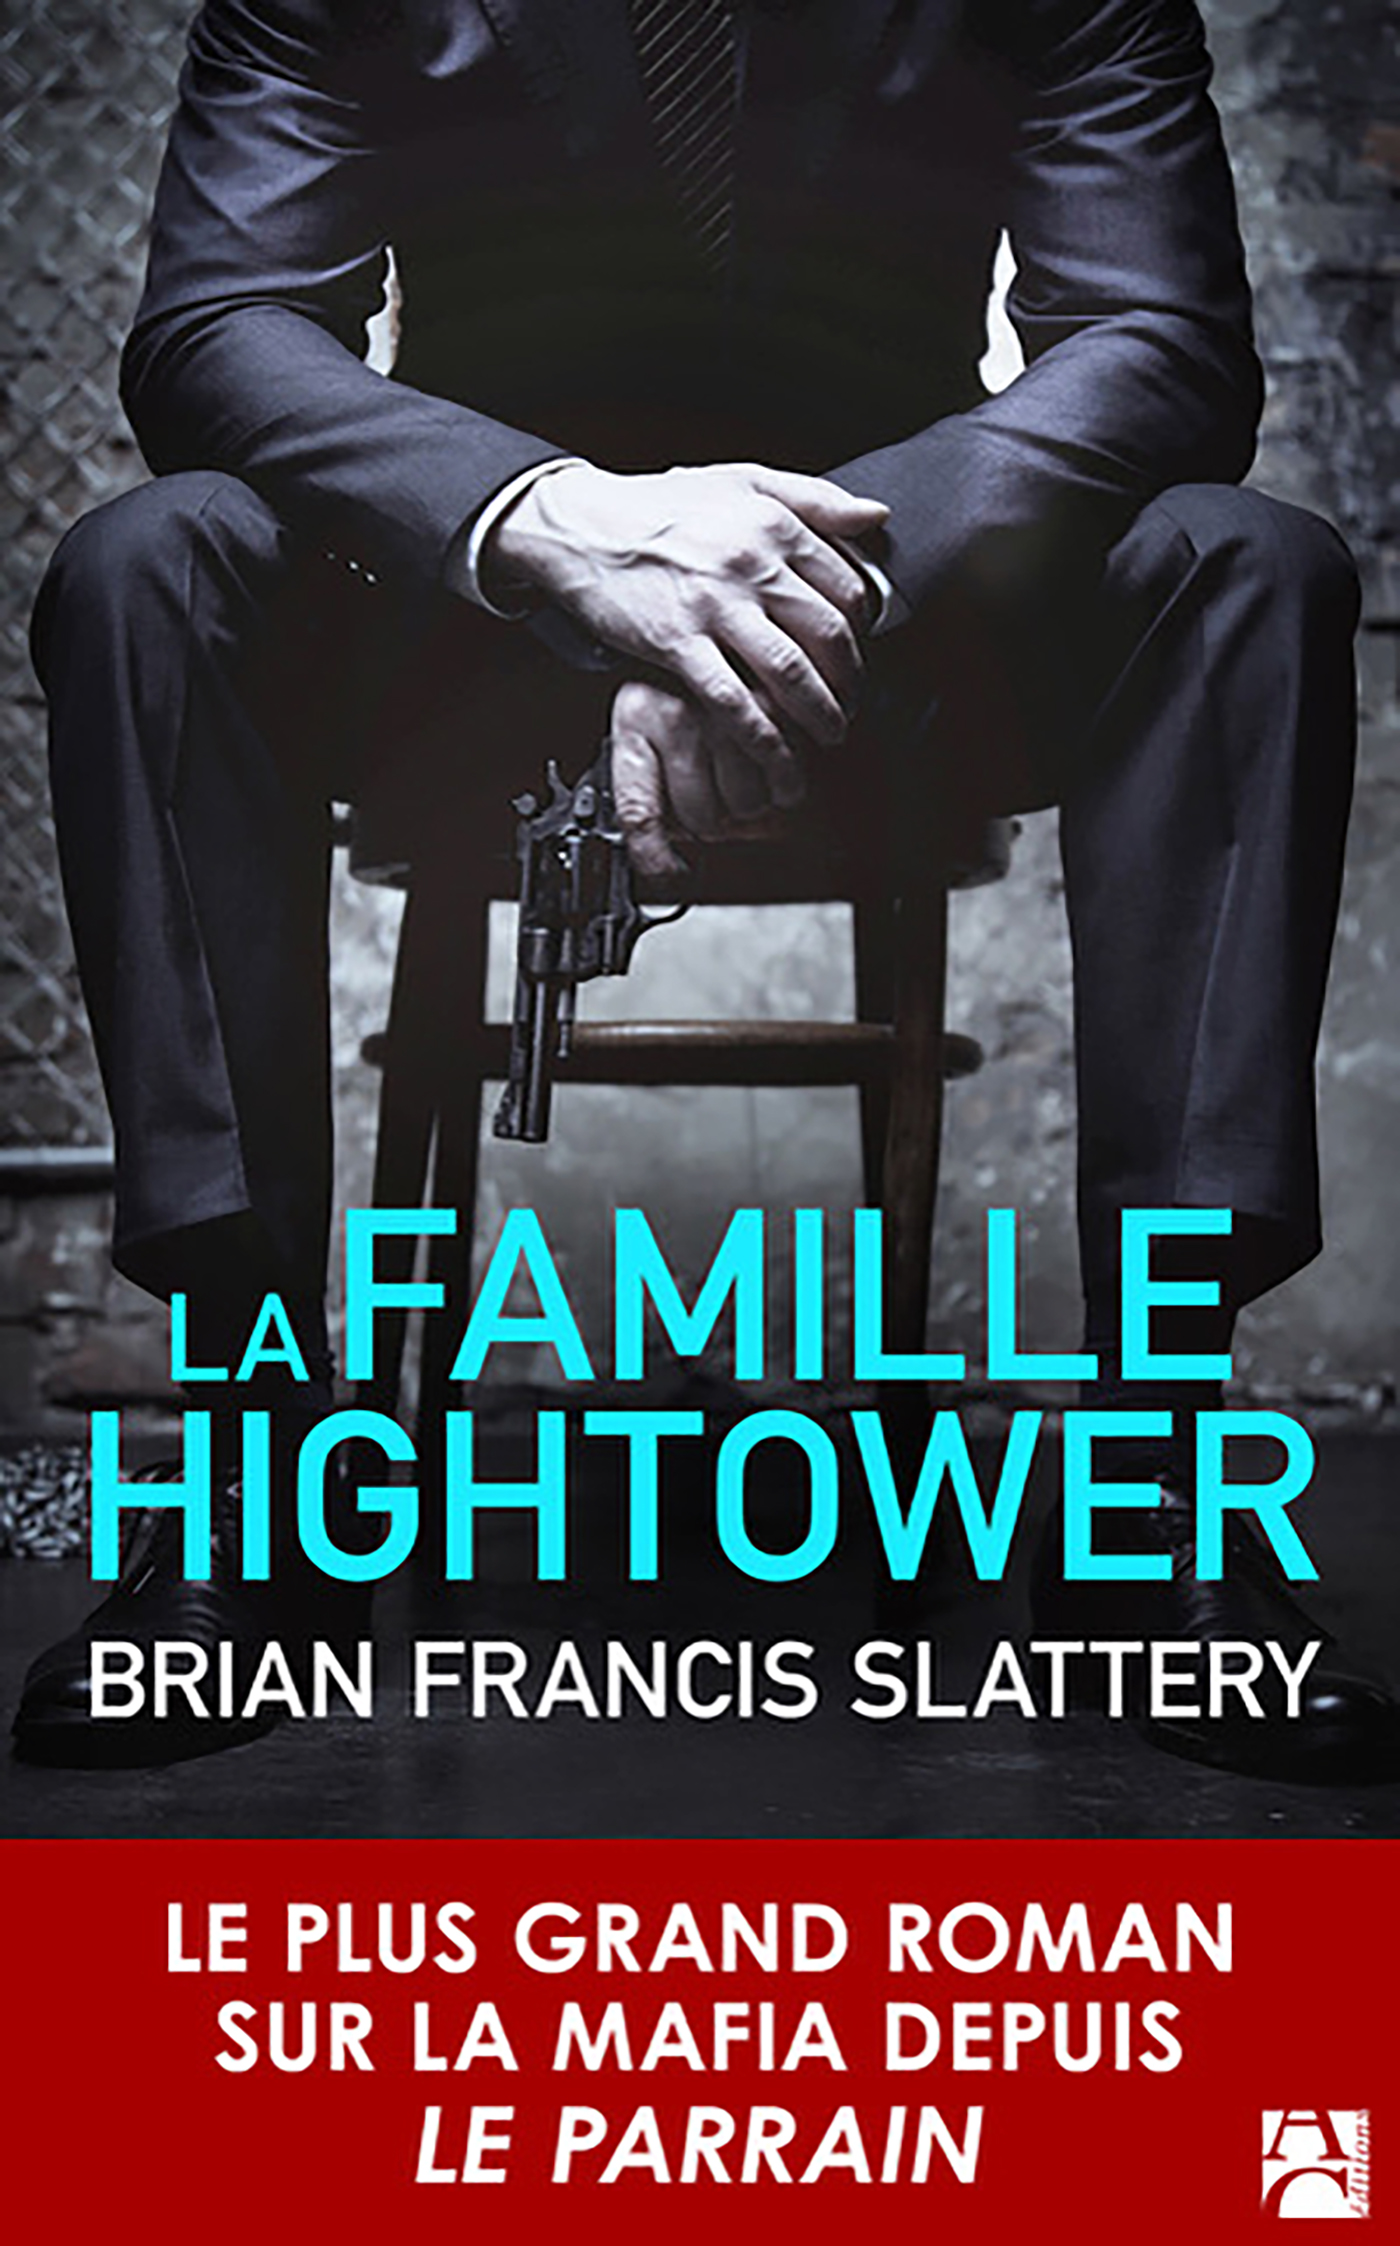 Afficher "La famille Hightower"